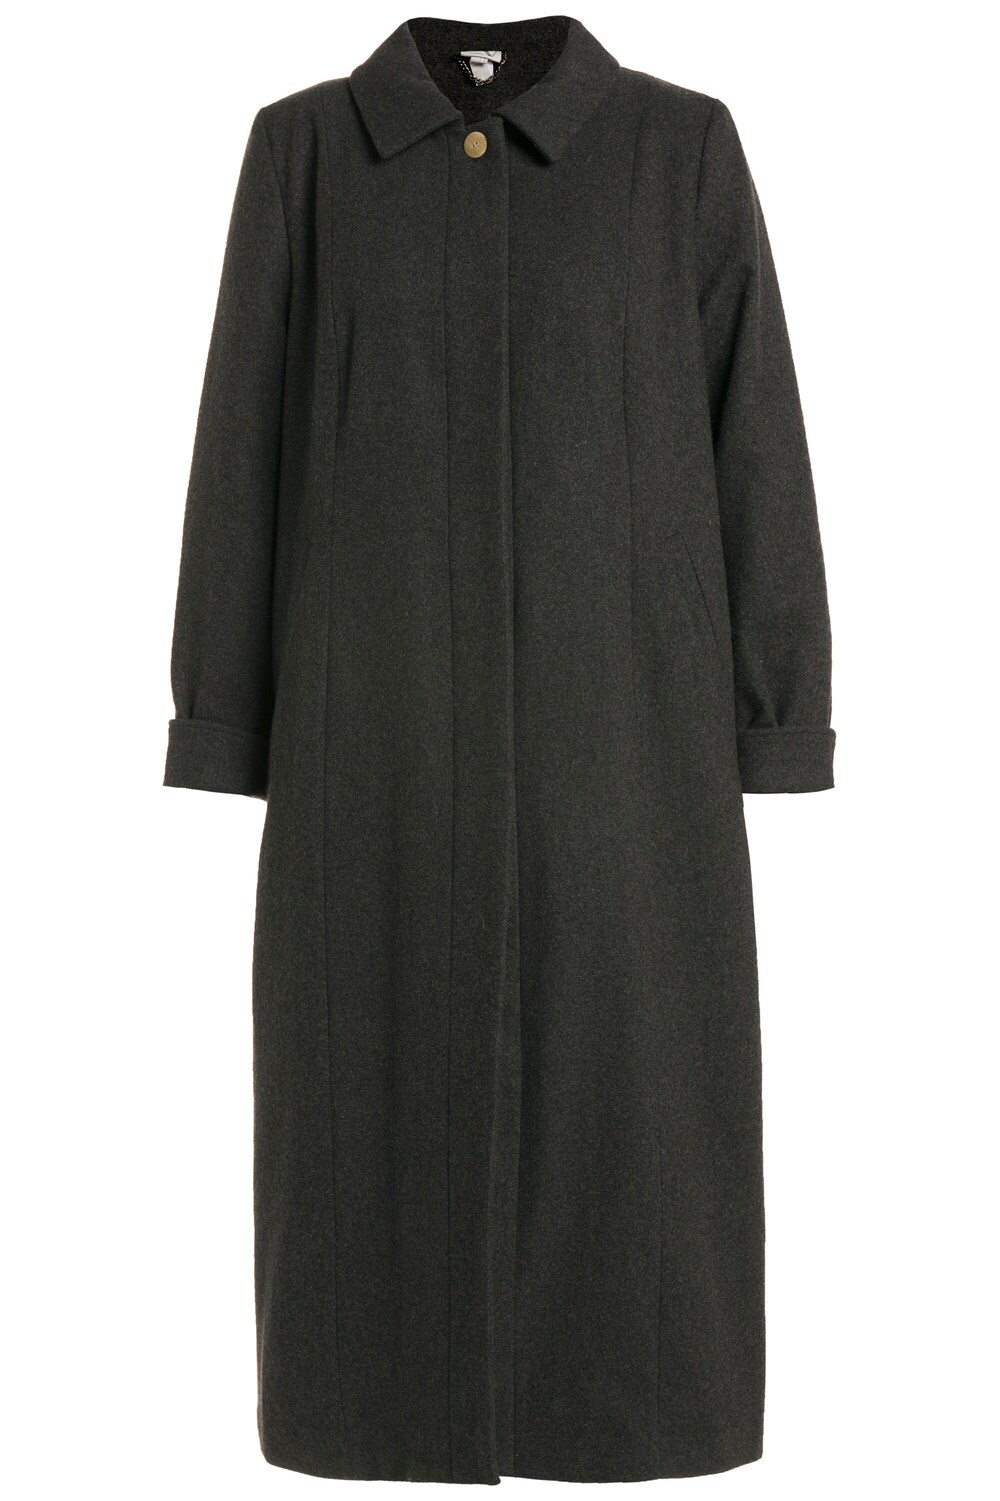 Межсезонное пальто Ulla Popken, темно-серый межсезонное пальто we fashion темно серый